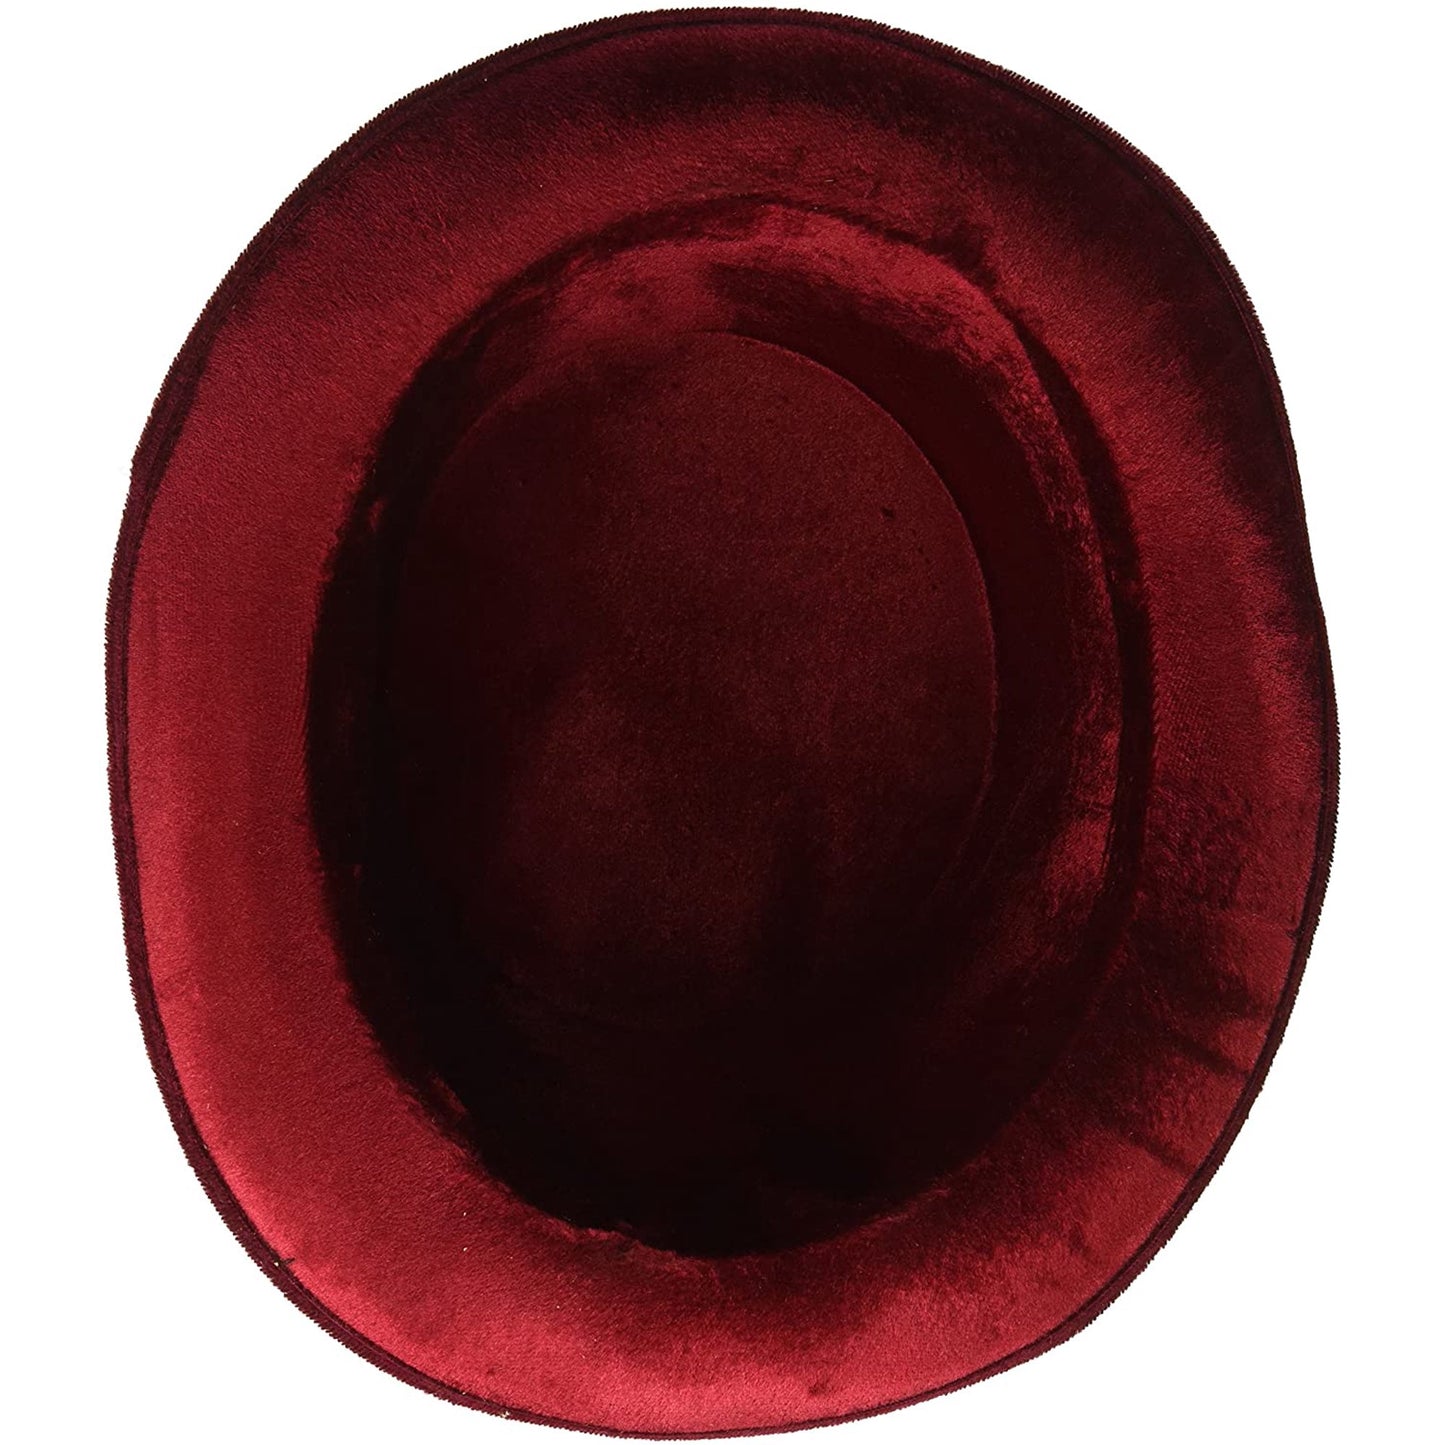 Forum Novelties Burgundy Deluxe Top Hat